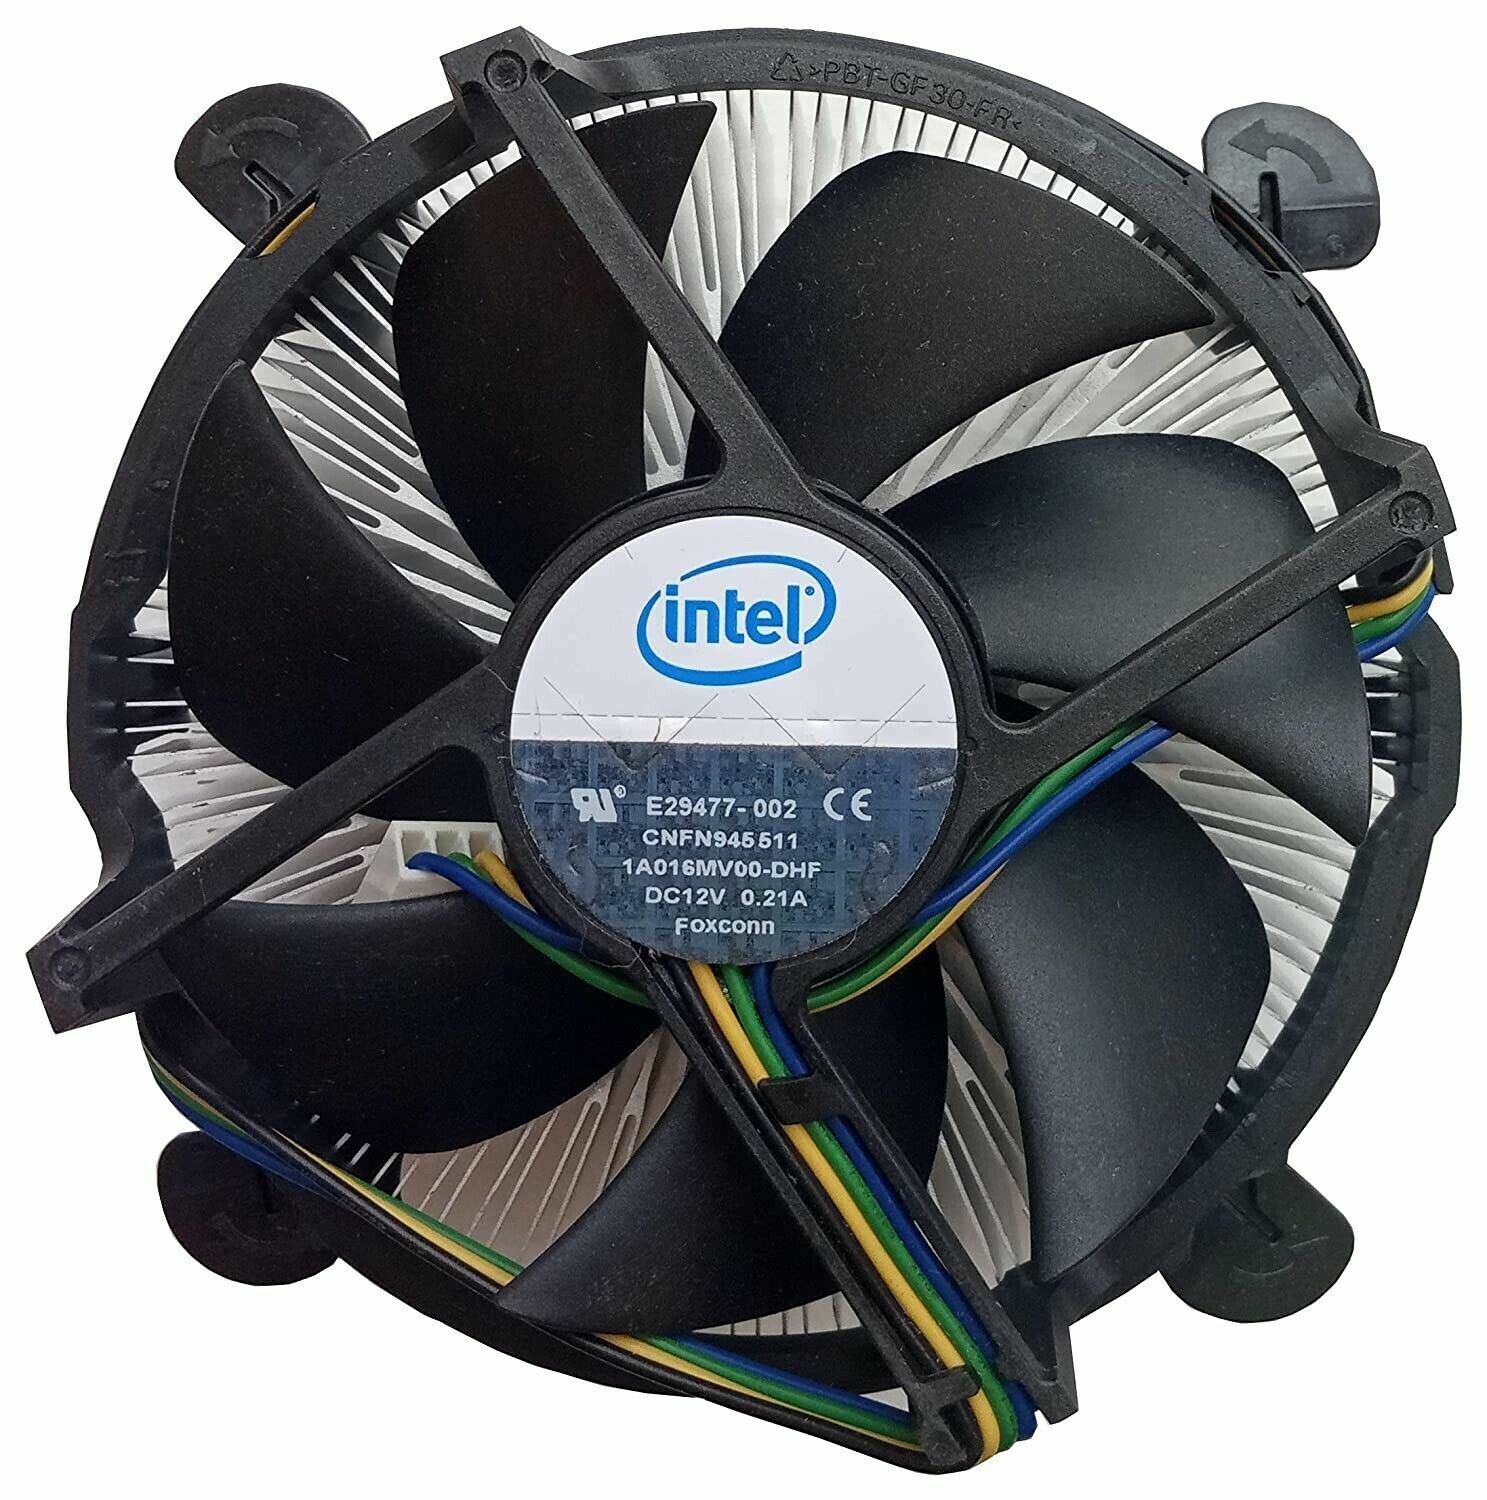 Intel E29477 LGA 1366 CPU Cooler Cooling Fan Copper Core Aluminum Heat Sink